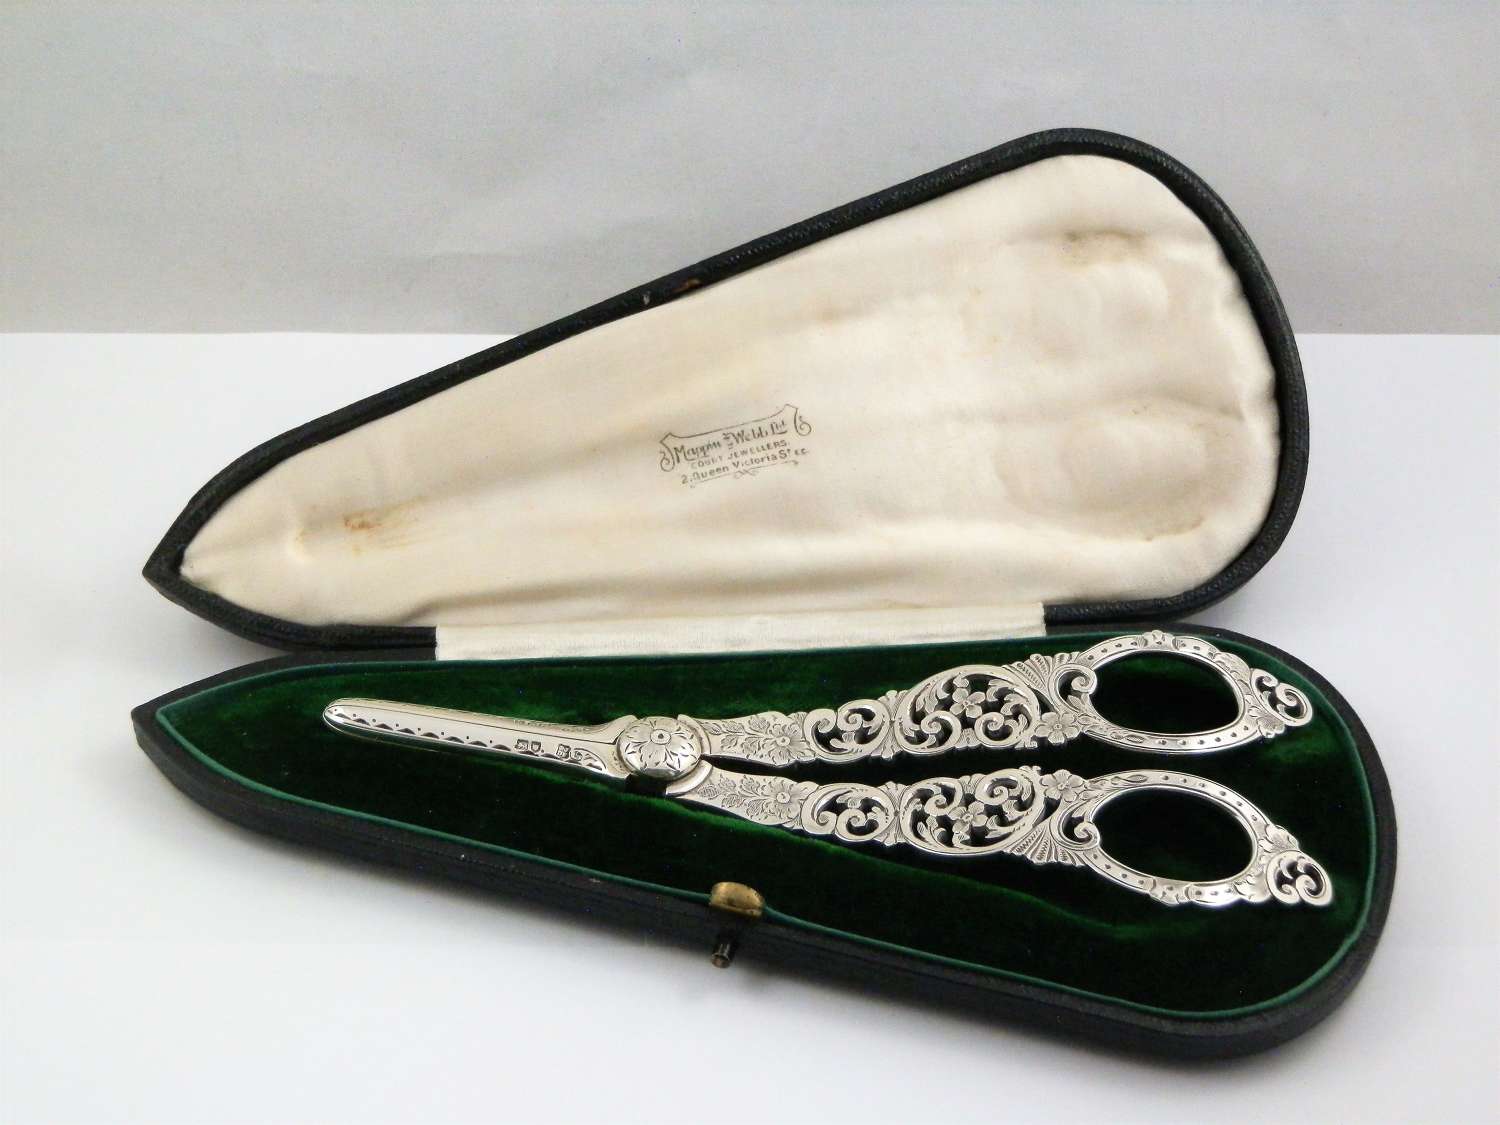 Edwardian silver cased grape scissors, London 1908